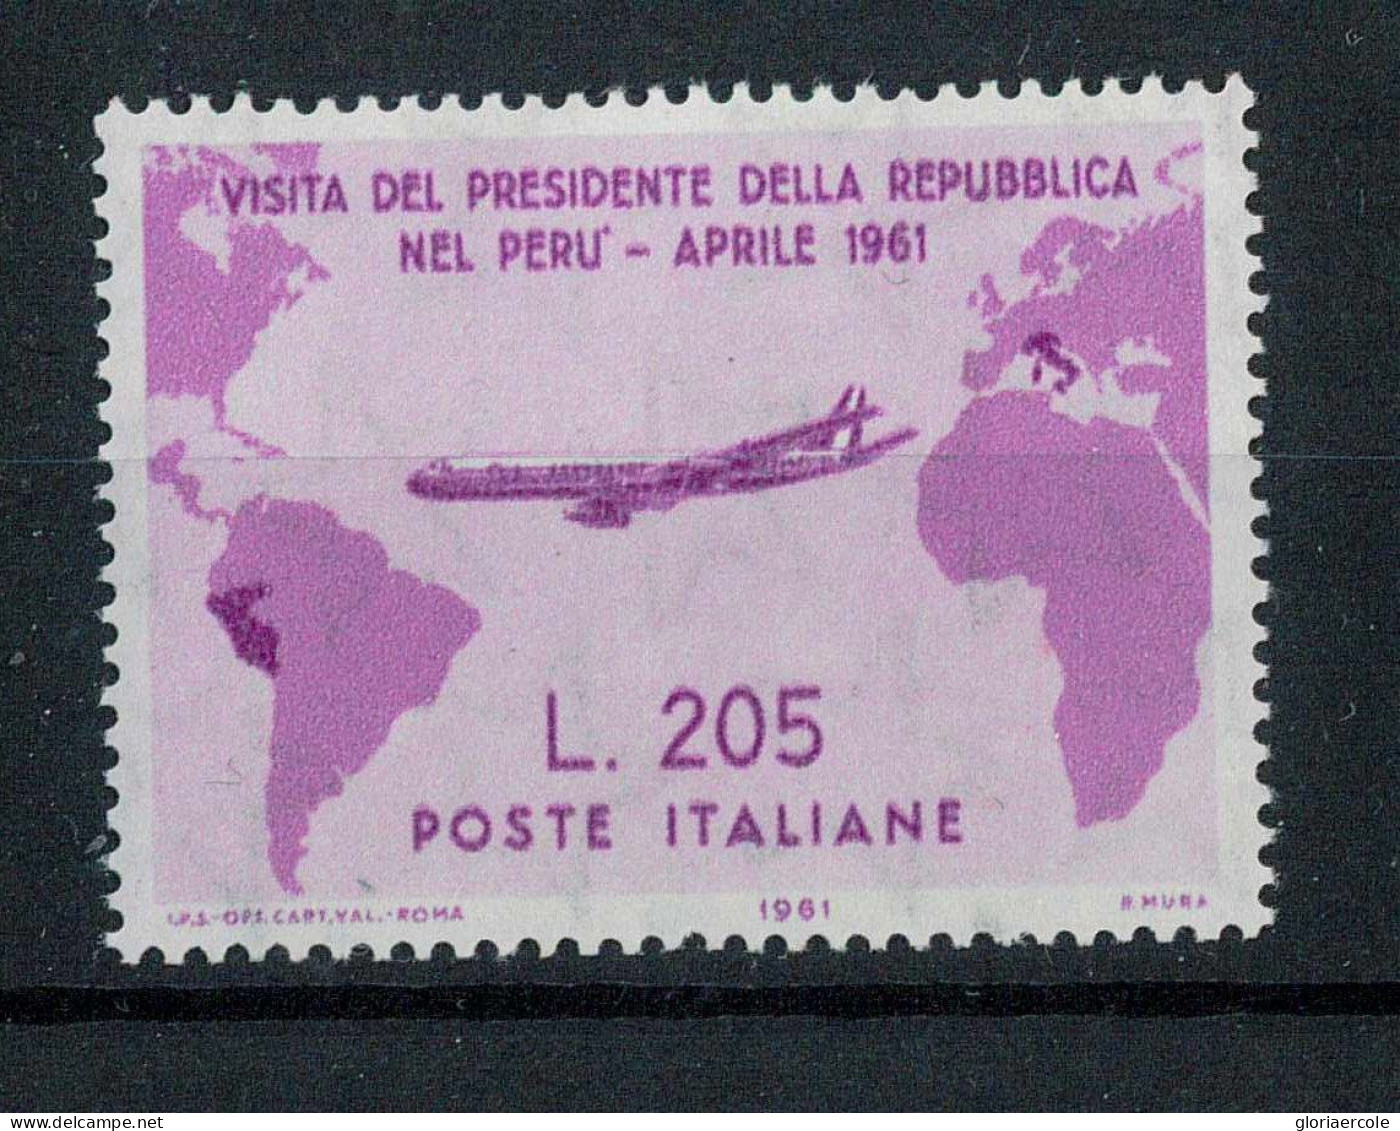 P2717 - REPUBBLICA ITALIANA , GRONCHI ROSA 1961, BELLISSIMO FRANCOBOLLO NUOVO, CERTIFICFDATO CILIO. - Sizilien